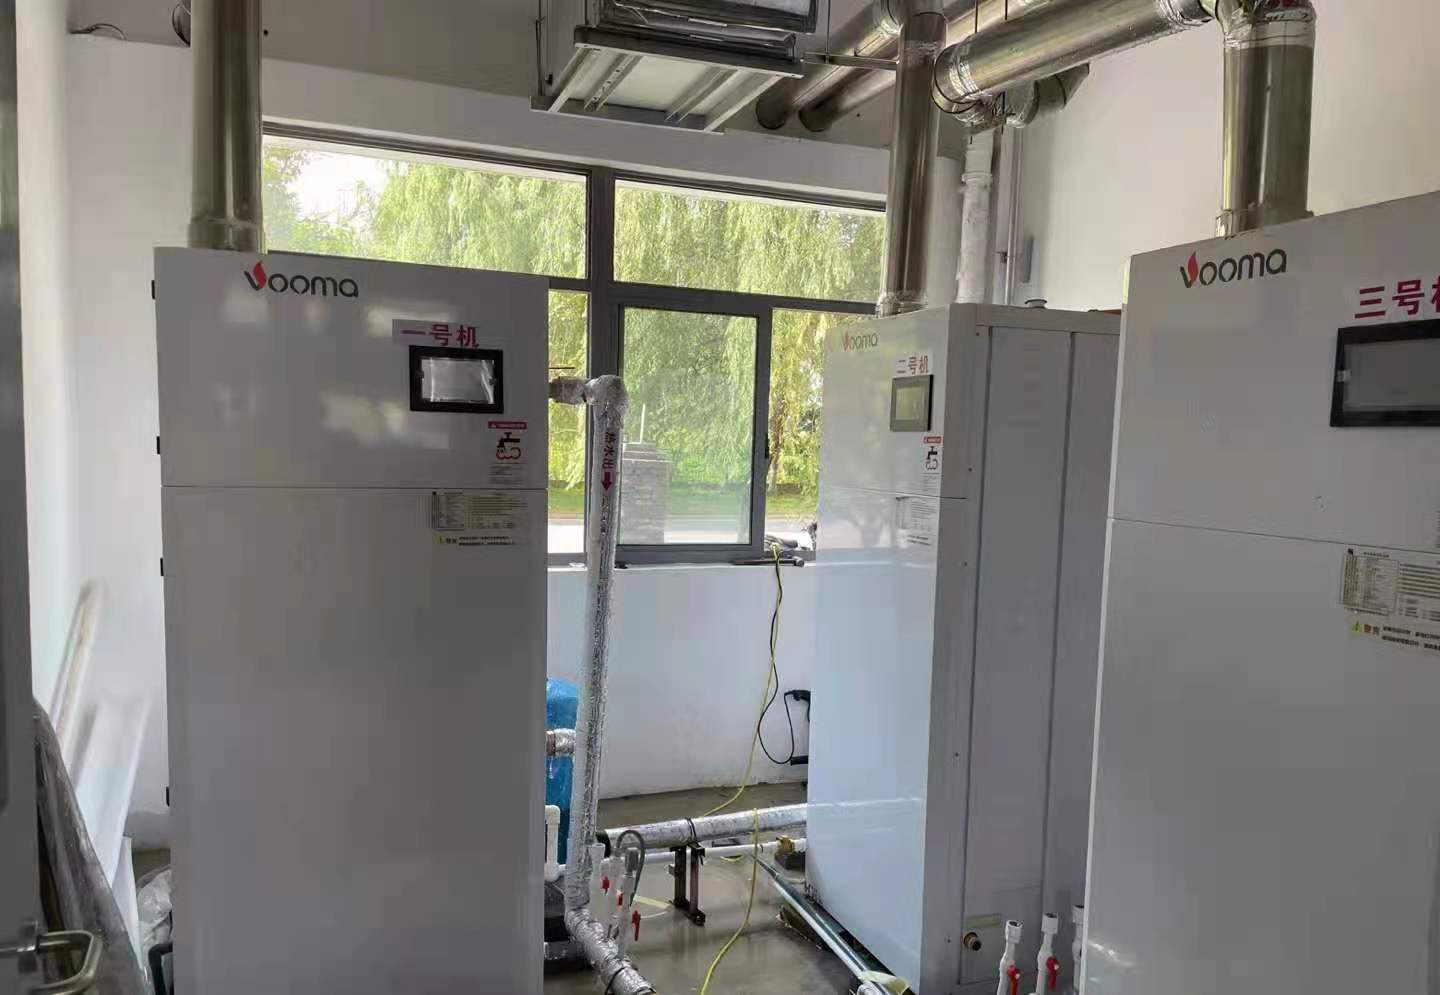 上海的人工温泉辅助加热系统用哪种热水设备？